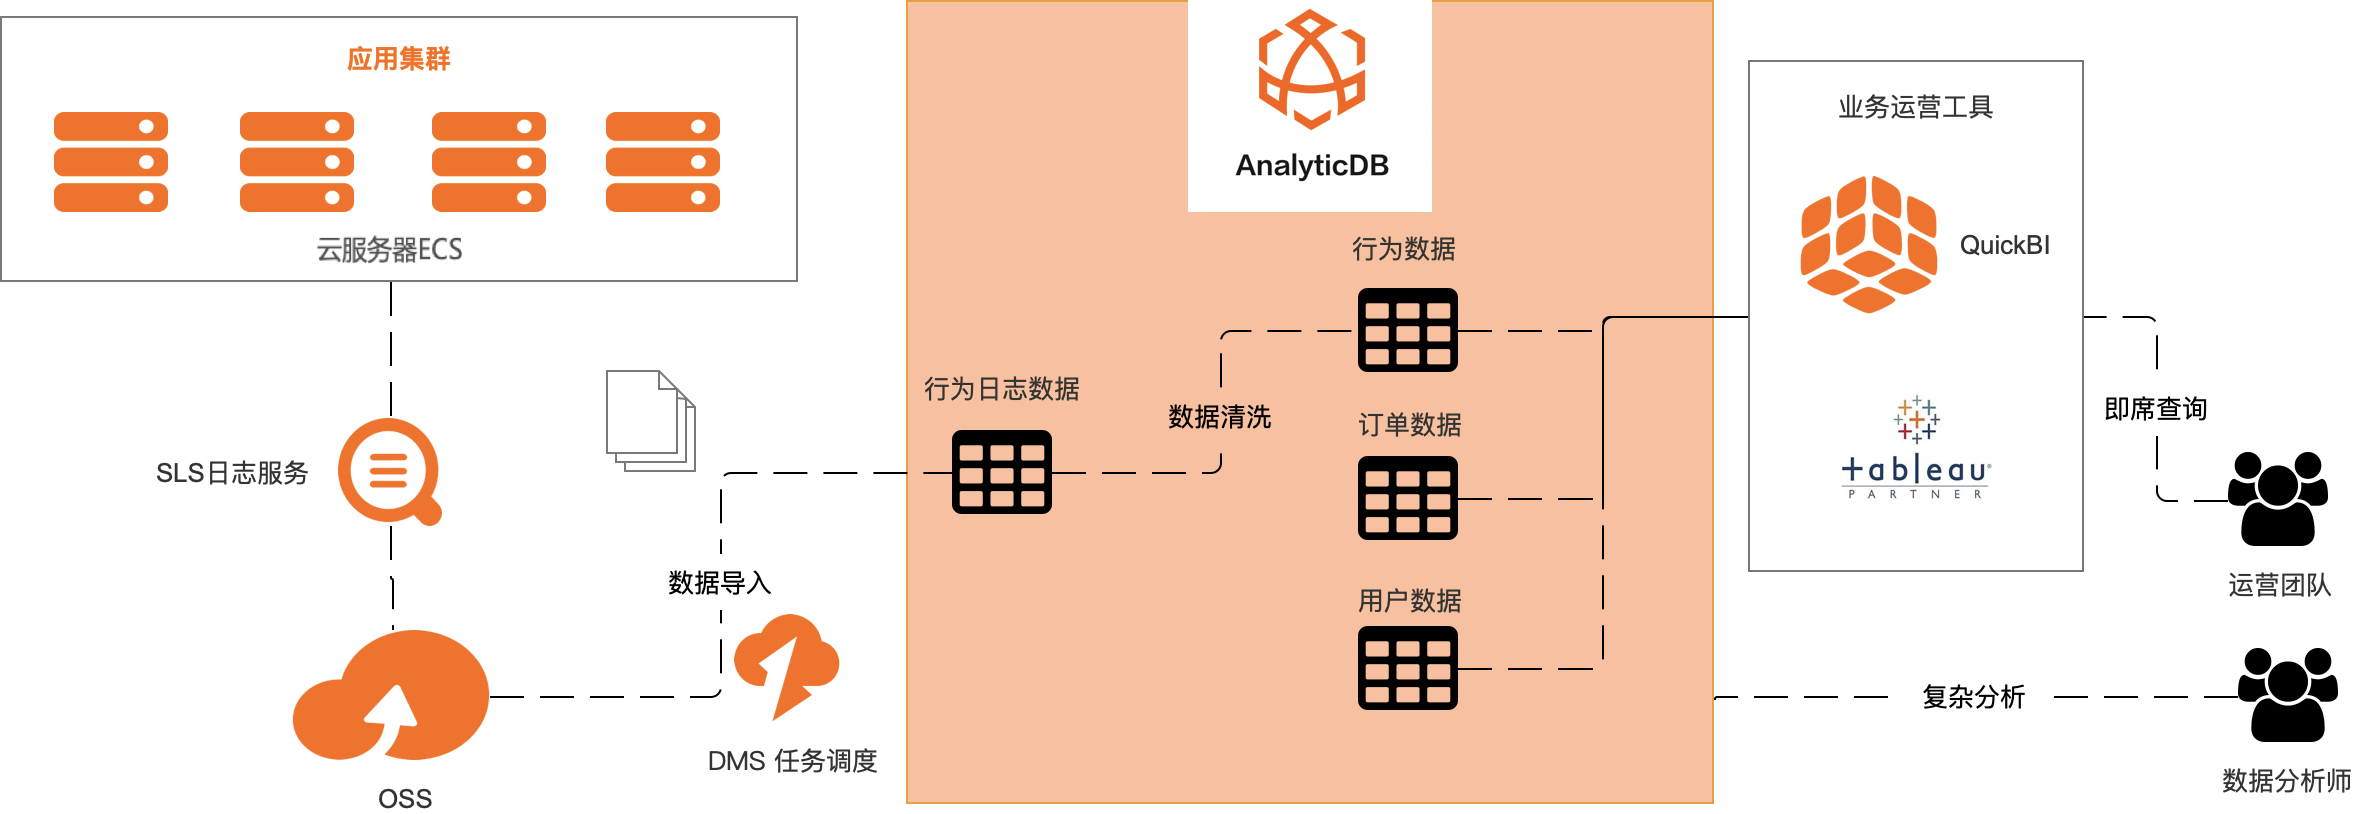 基于AnalyticDB PostgreSQL + OSS + SLS构建面向应用内行为数据的分析全链路